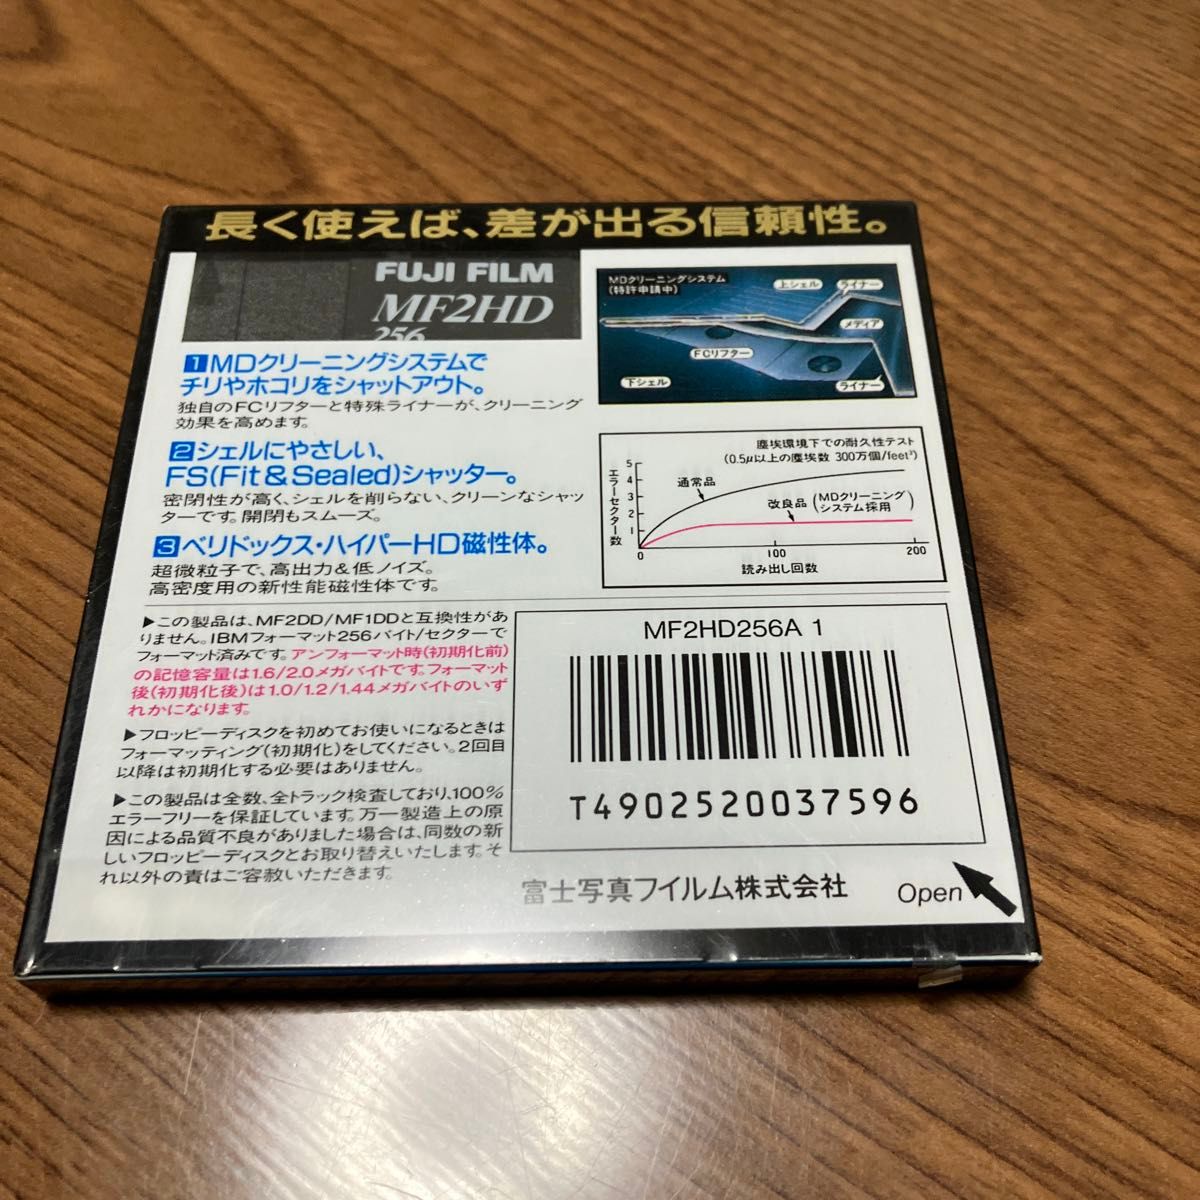 Fujifilm 2HD フロッピーディスク MF2HD256 MF2HD256A 1 ※新古品